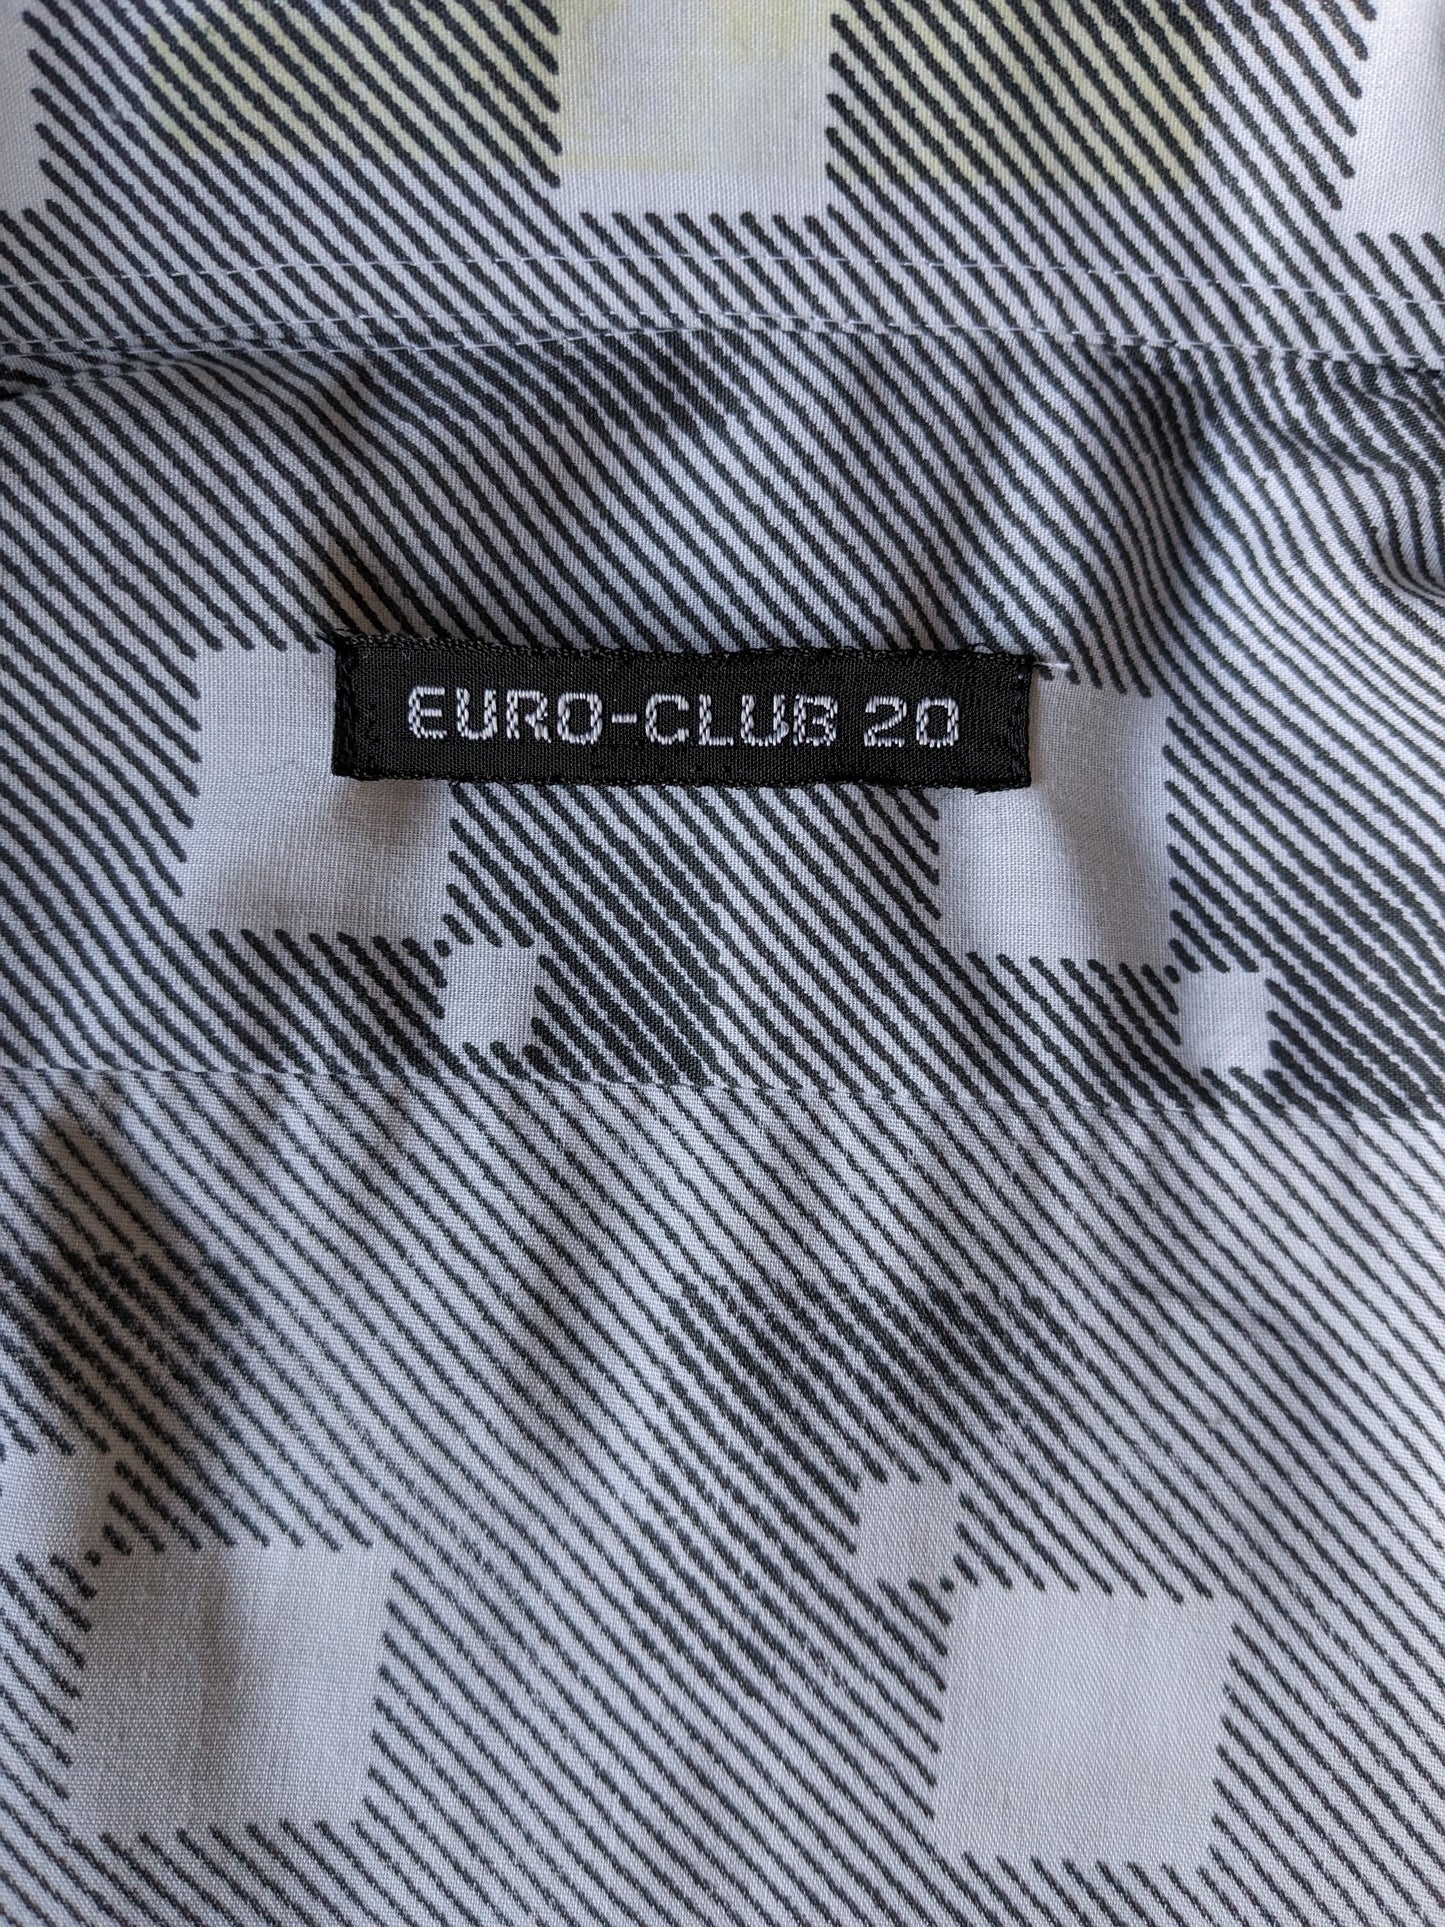 Camicia vintage euro-club-20 degli anni '70 con collare punti. Stampa grigia bianca. Taglia M.